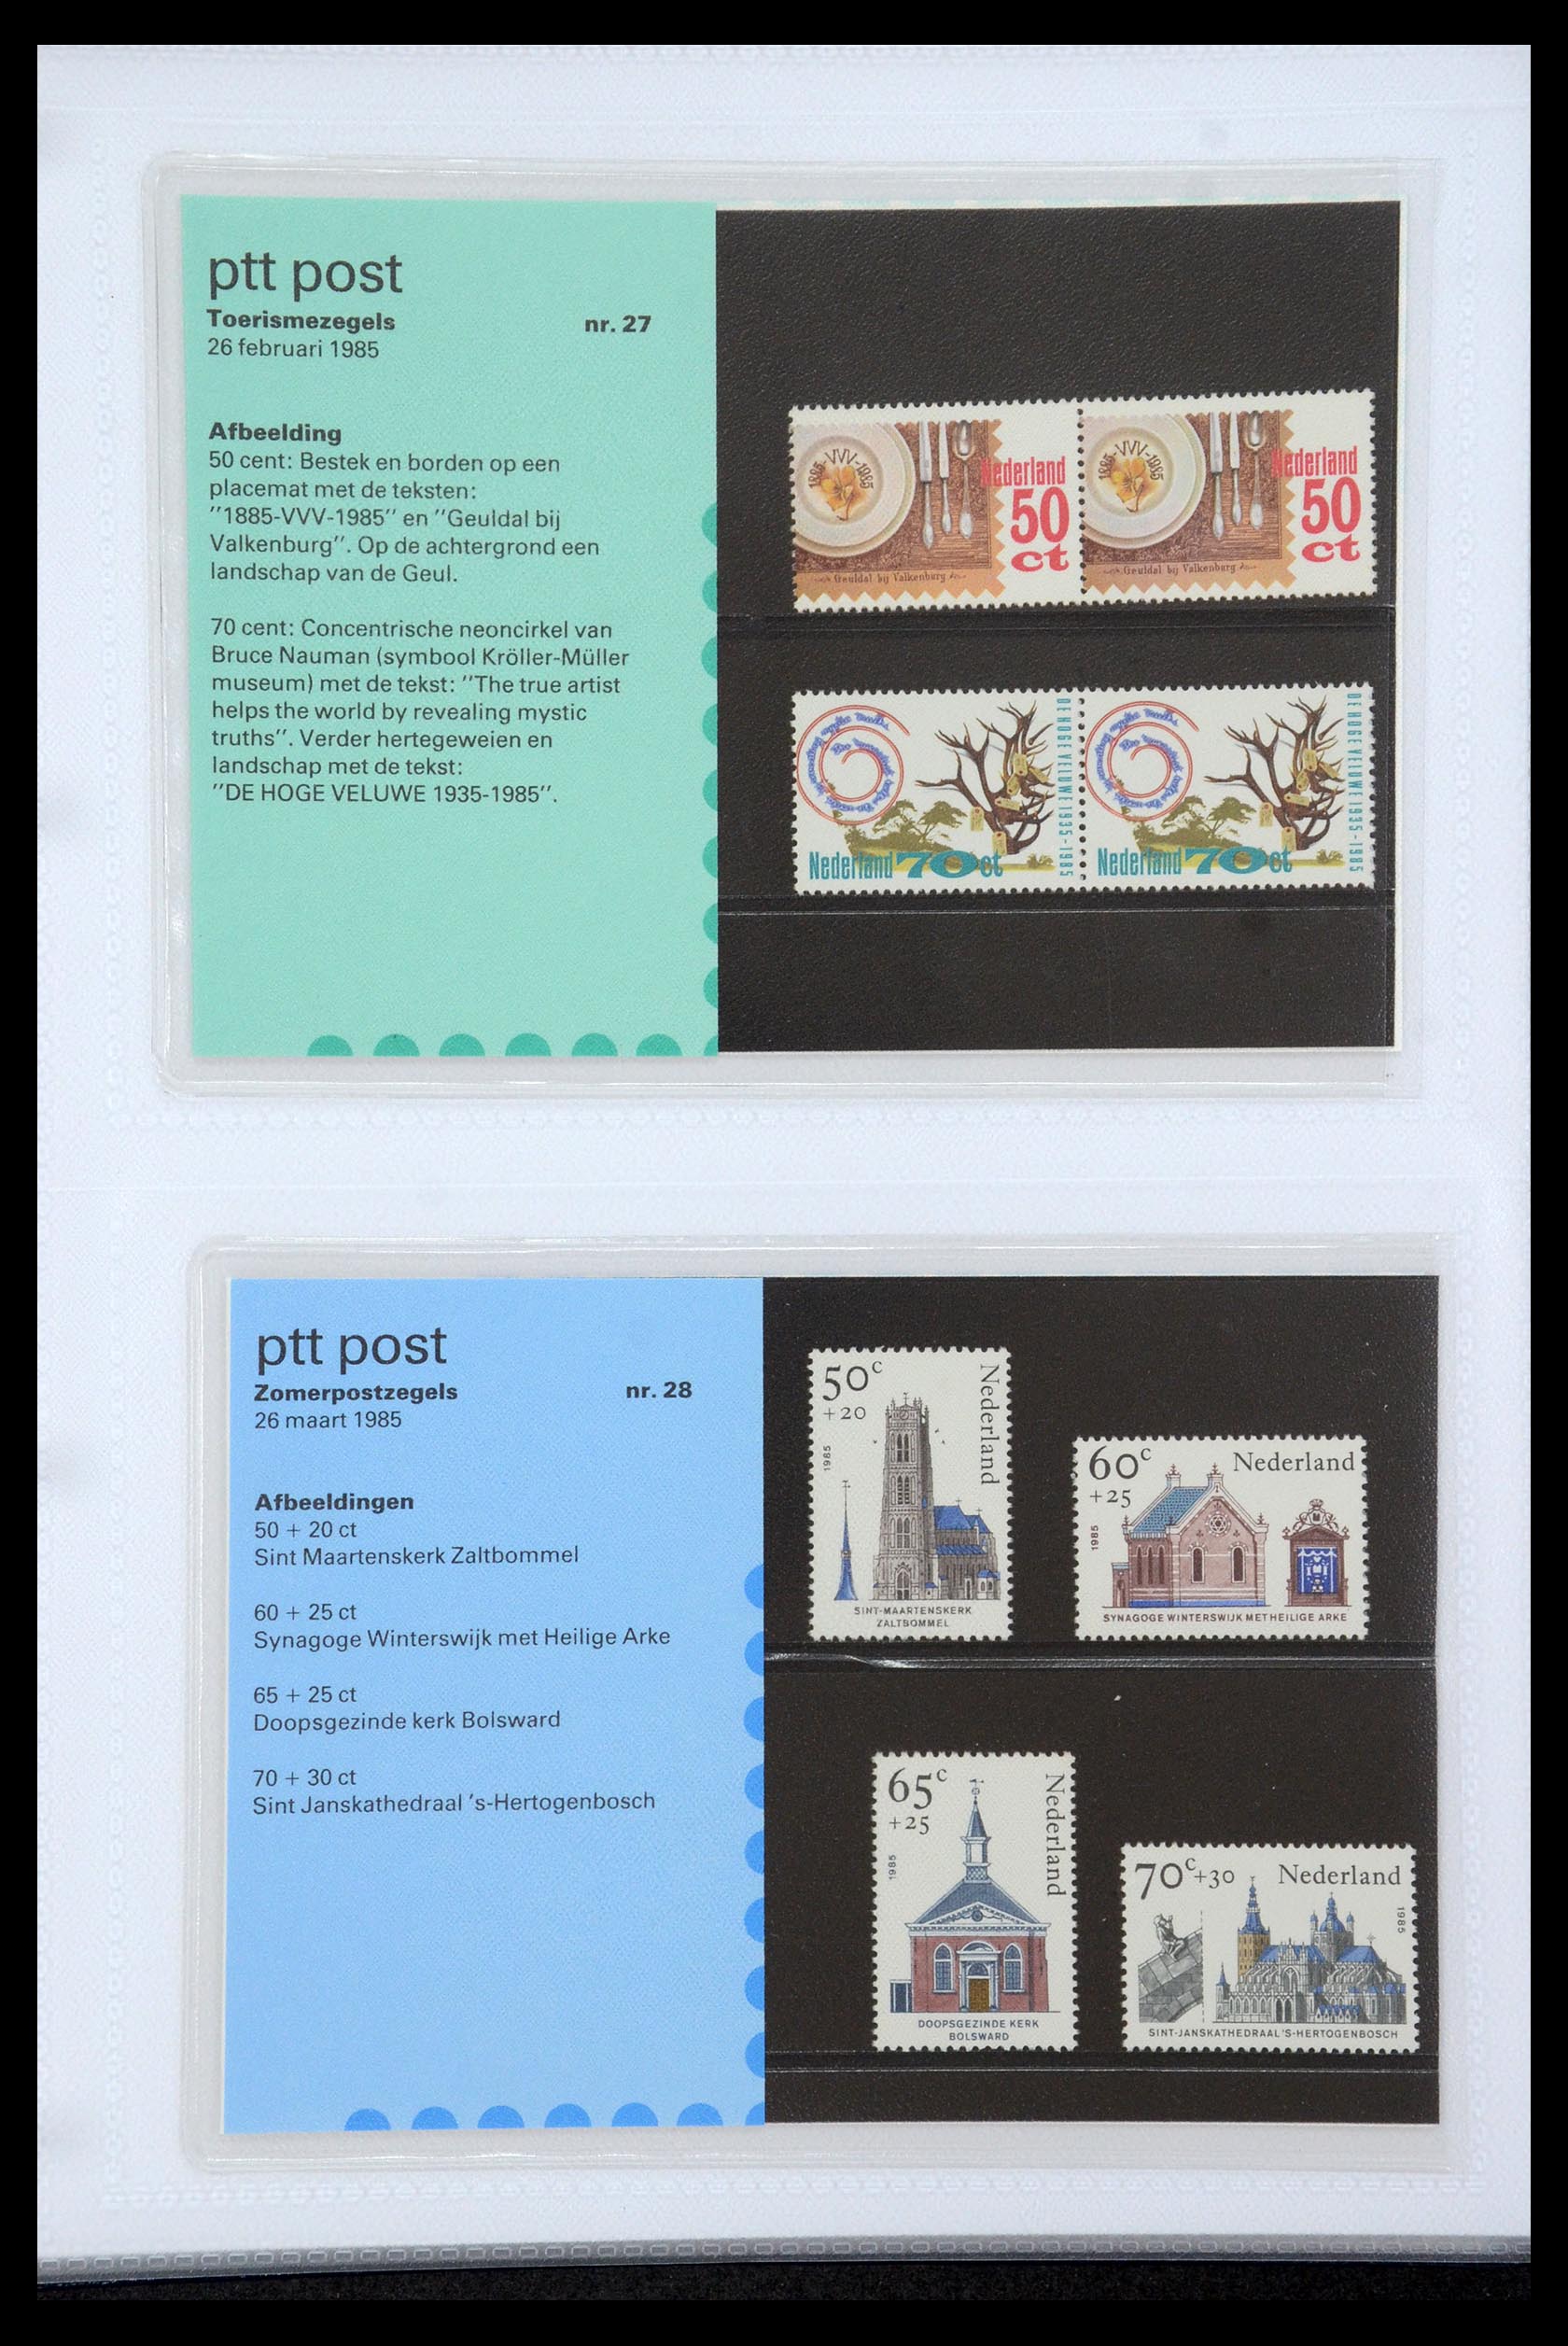 35947 014 - Stamp Collection 35947 Netherlands PTT presentation packs 1982-2019!